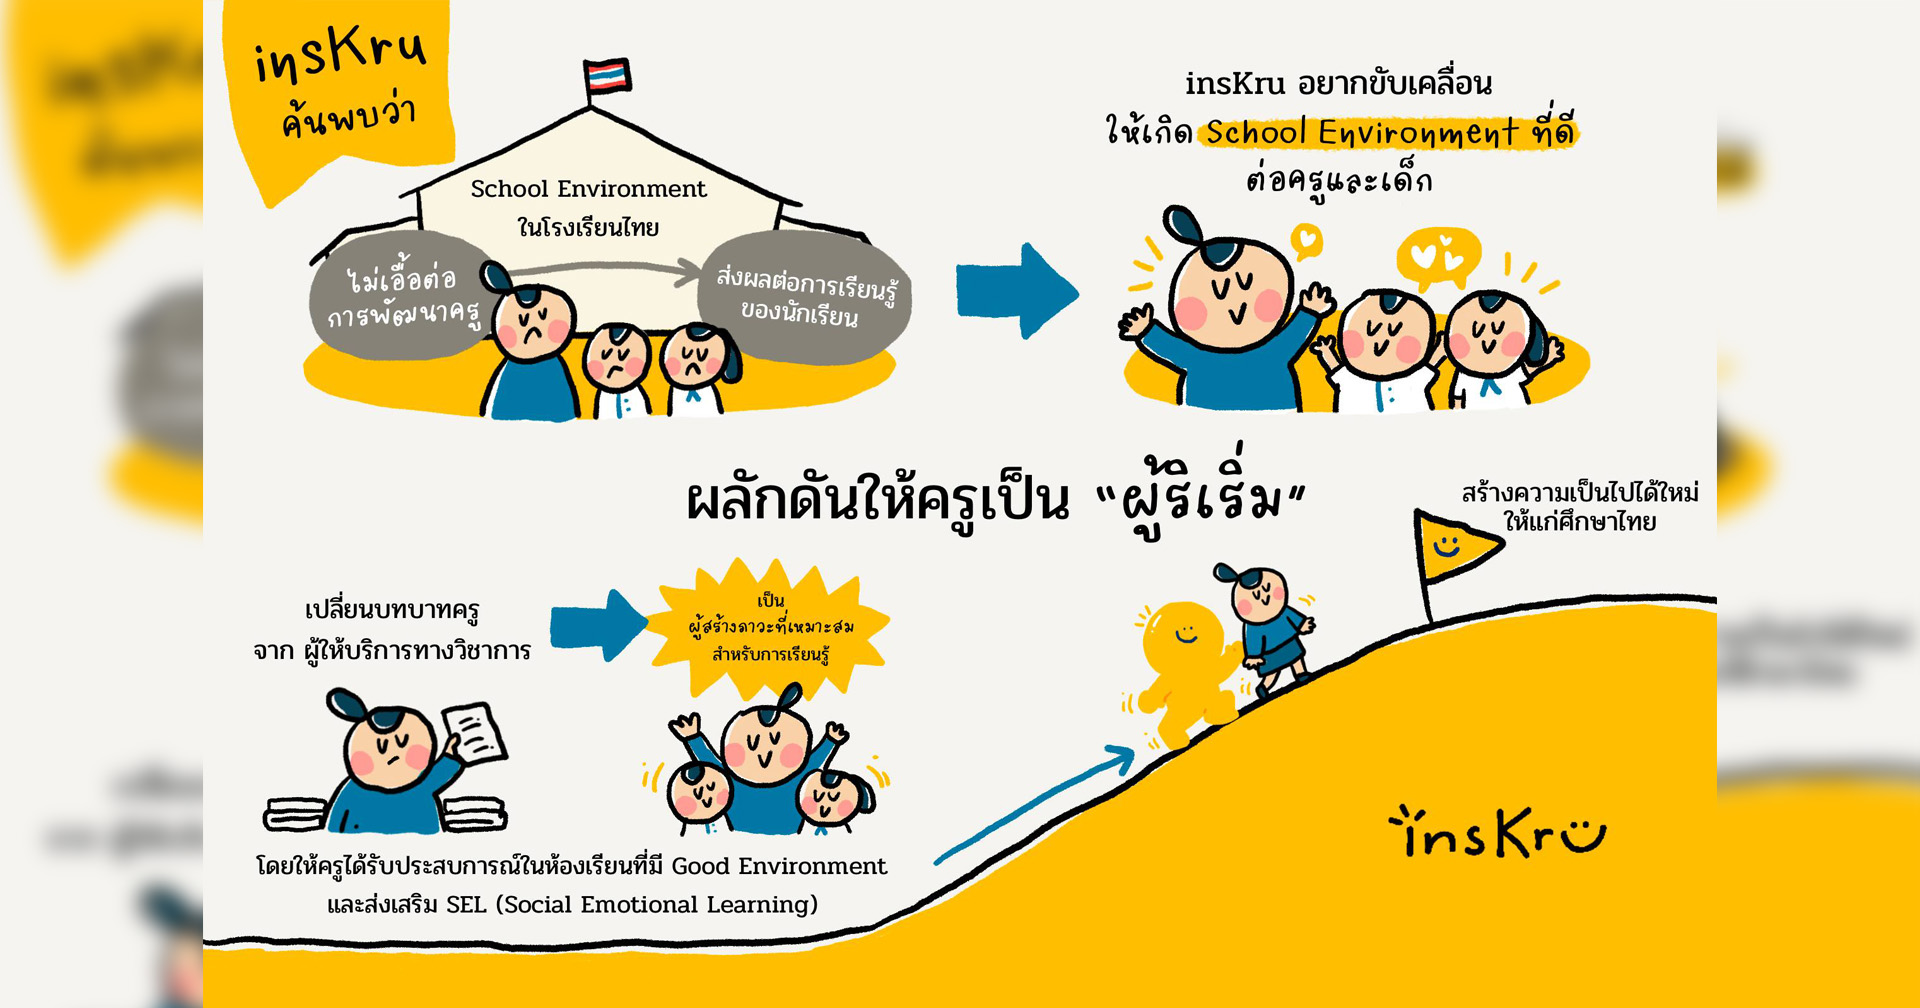 insKru เผย “สภาวะแวดล้อมทางสังคมในโรงเรียน” ไม่เอื้อพัฒนาครู พร้อมผลักดันครูเป็น “ผู้ริเริ่ม”ยกระดับการศึกษาไทย